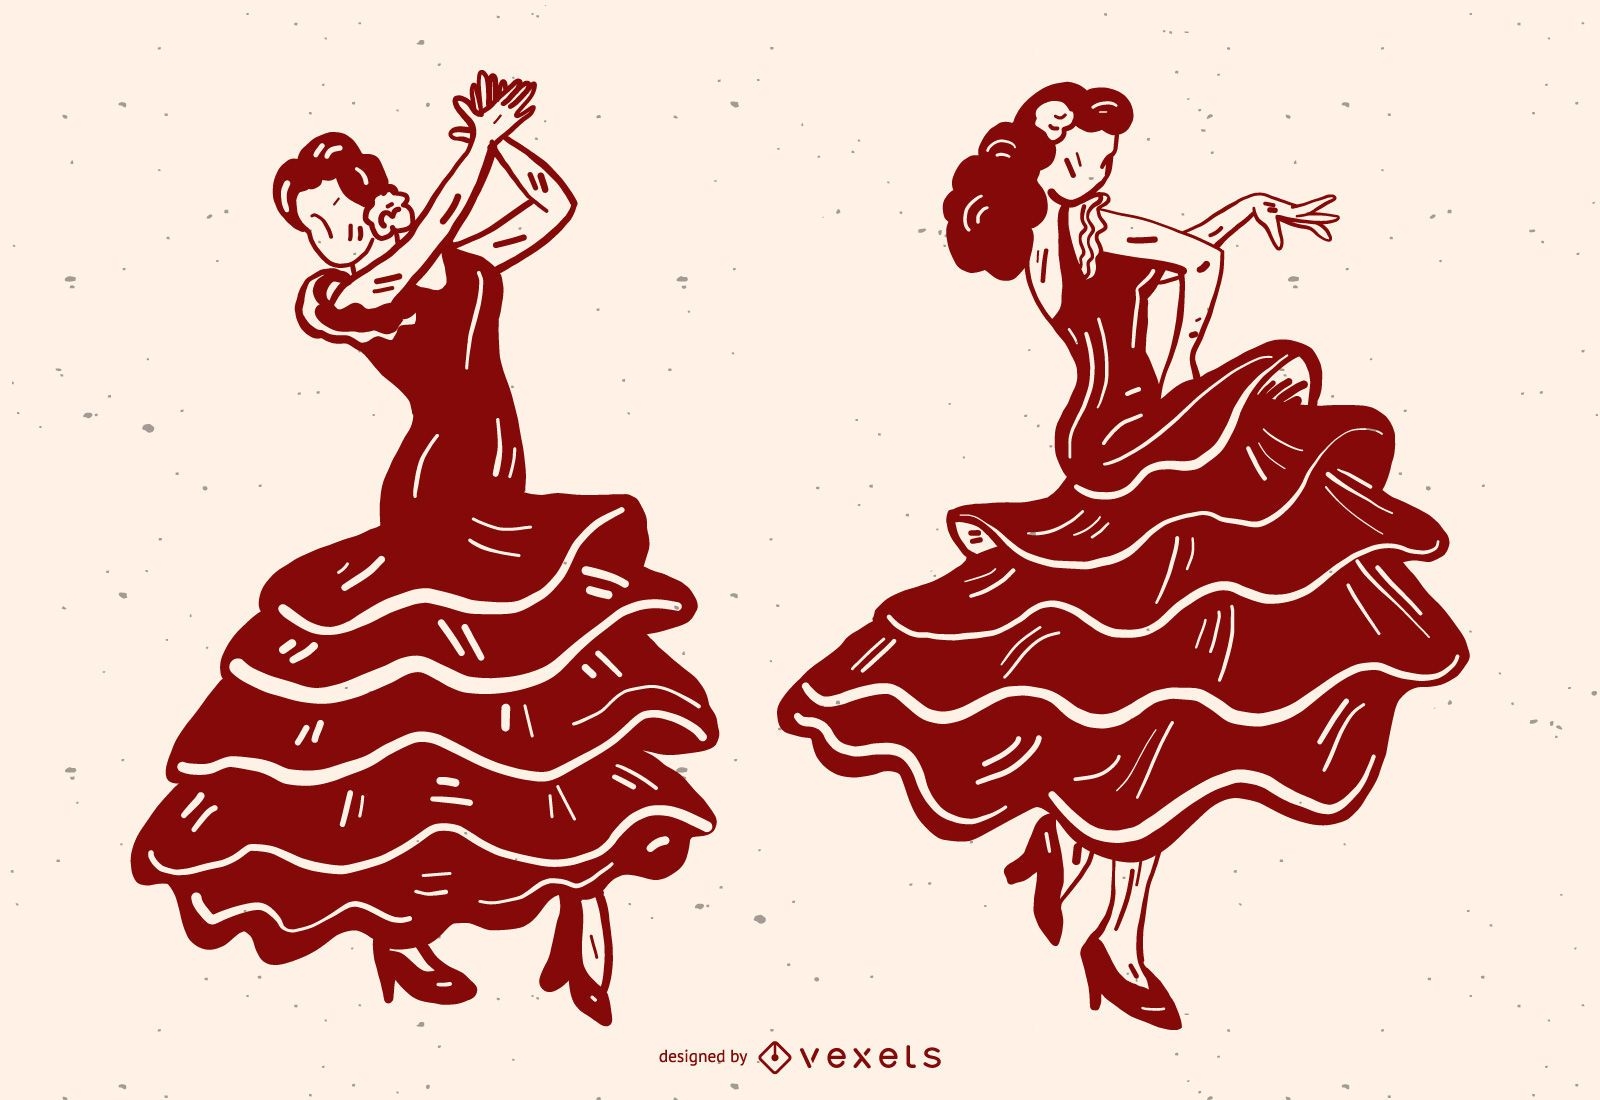 Gr?fico vetorial de mulher dan?ando flamenco